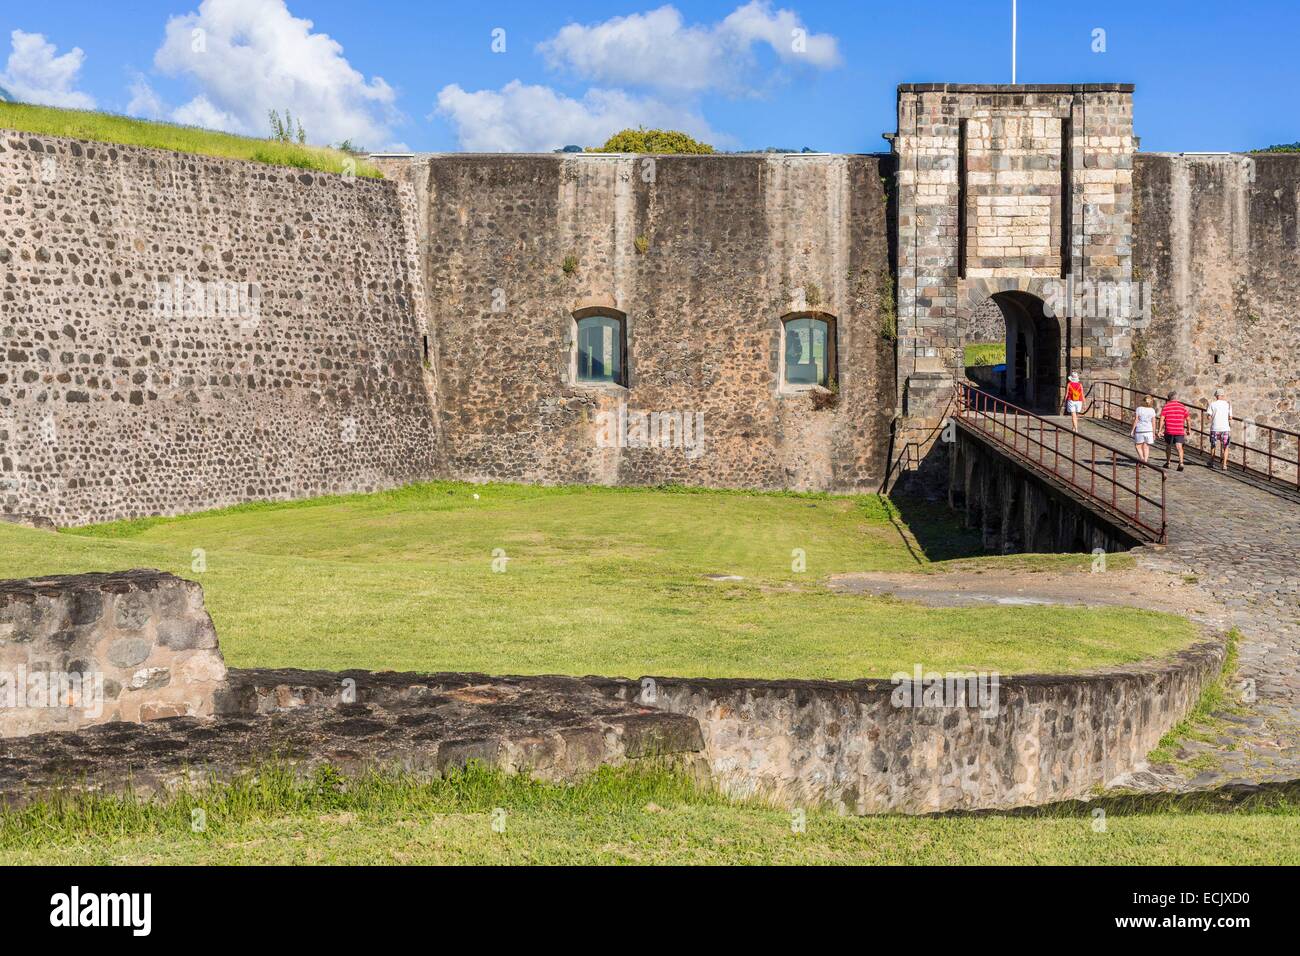 La France, Guadeloupe, Basse-terre, fort Delgres anciennement Fort Saint Charles (classé monument historique en 1977) a été fondée au 17ème siècle mais a été considérablement modifié au xviiie siècle, l'entrée Banque D'Images